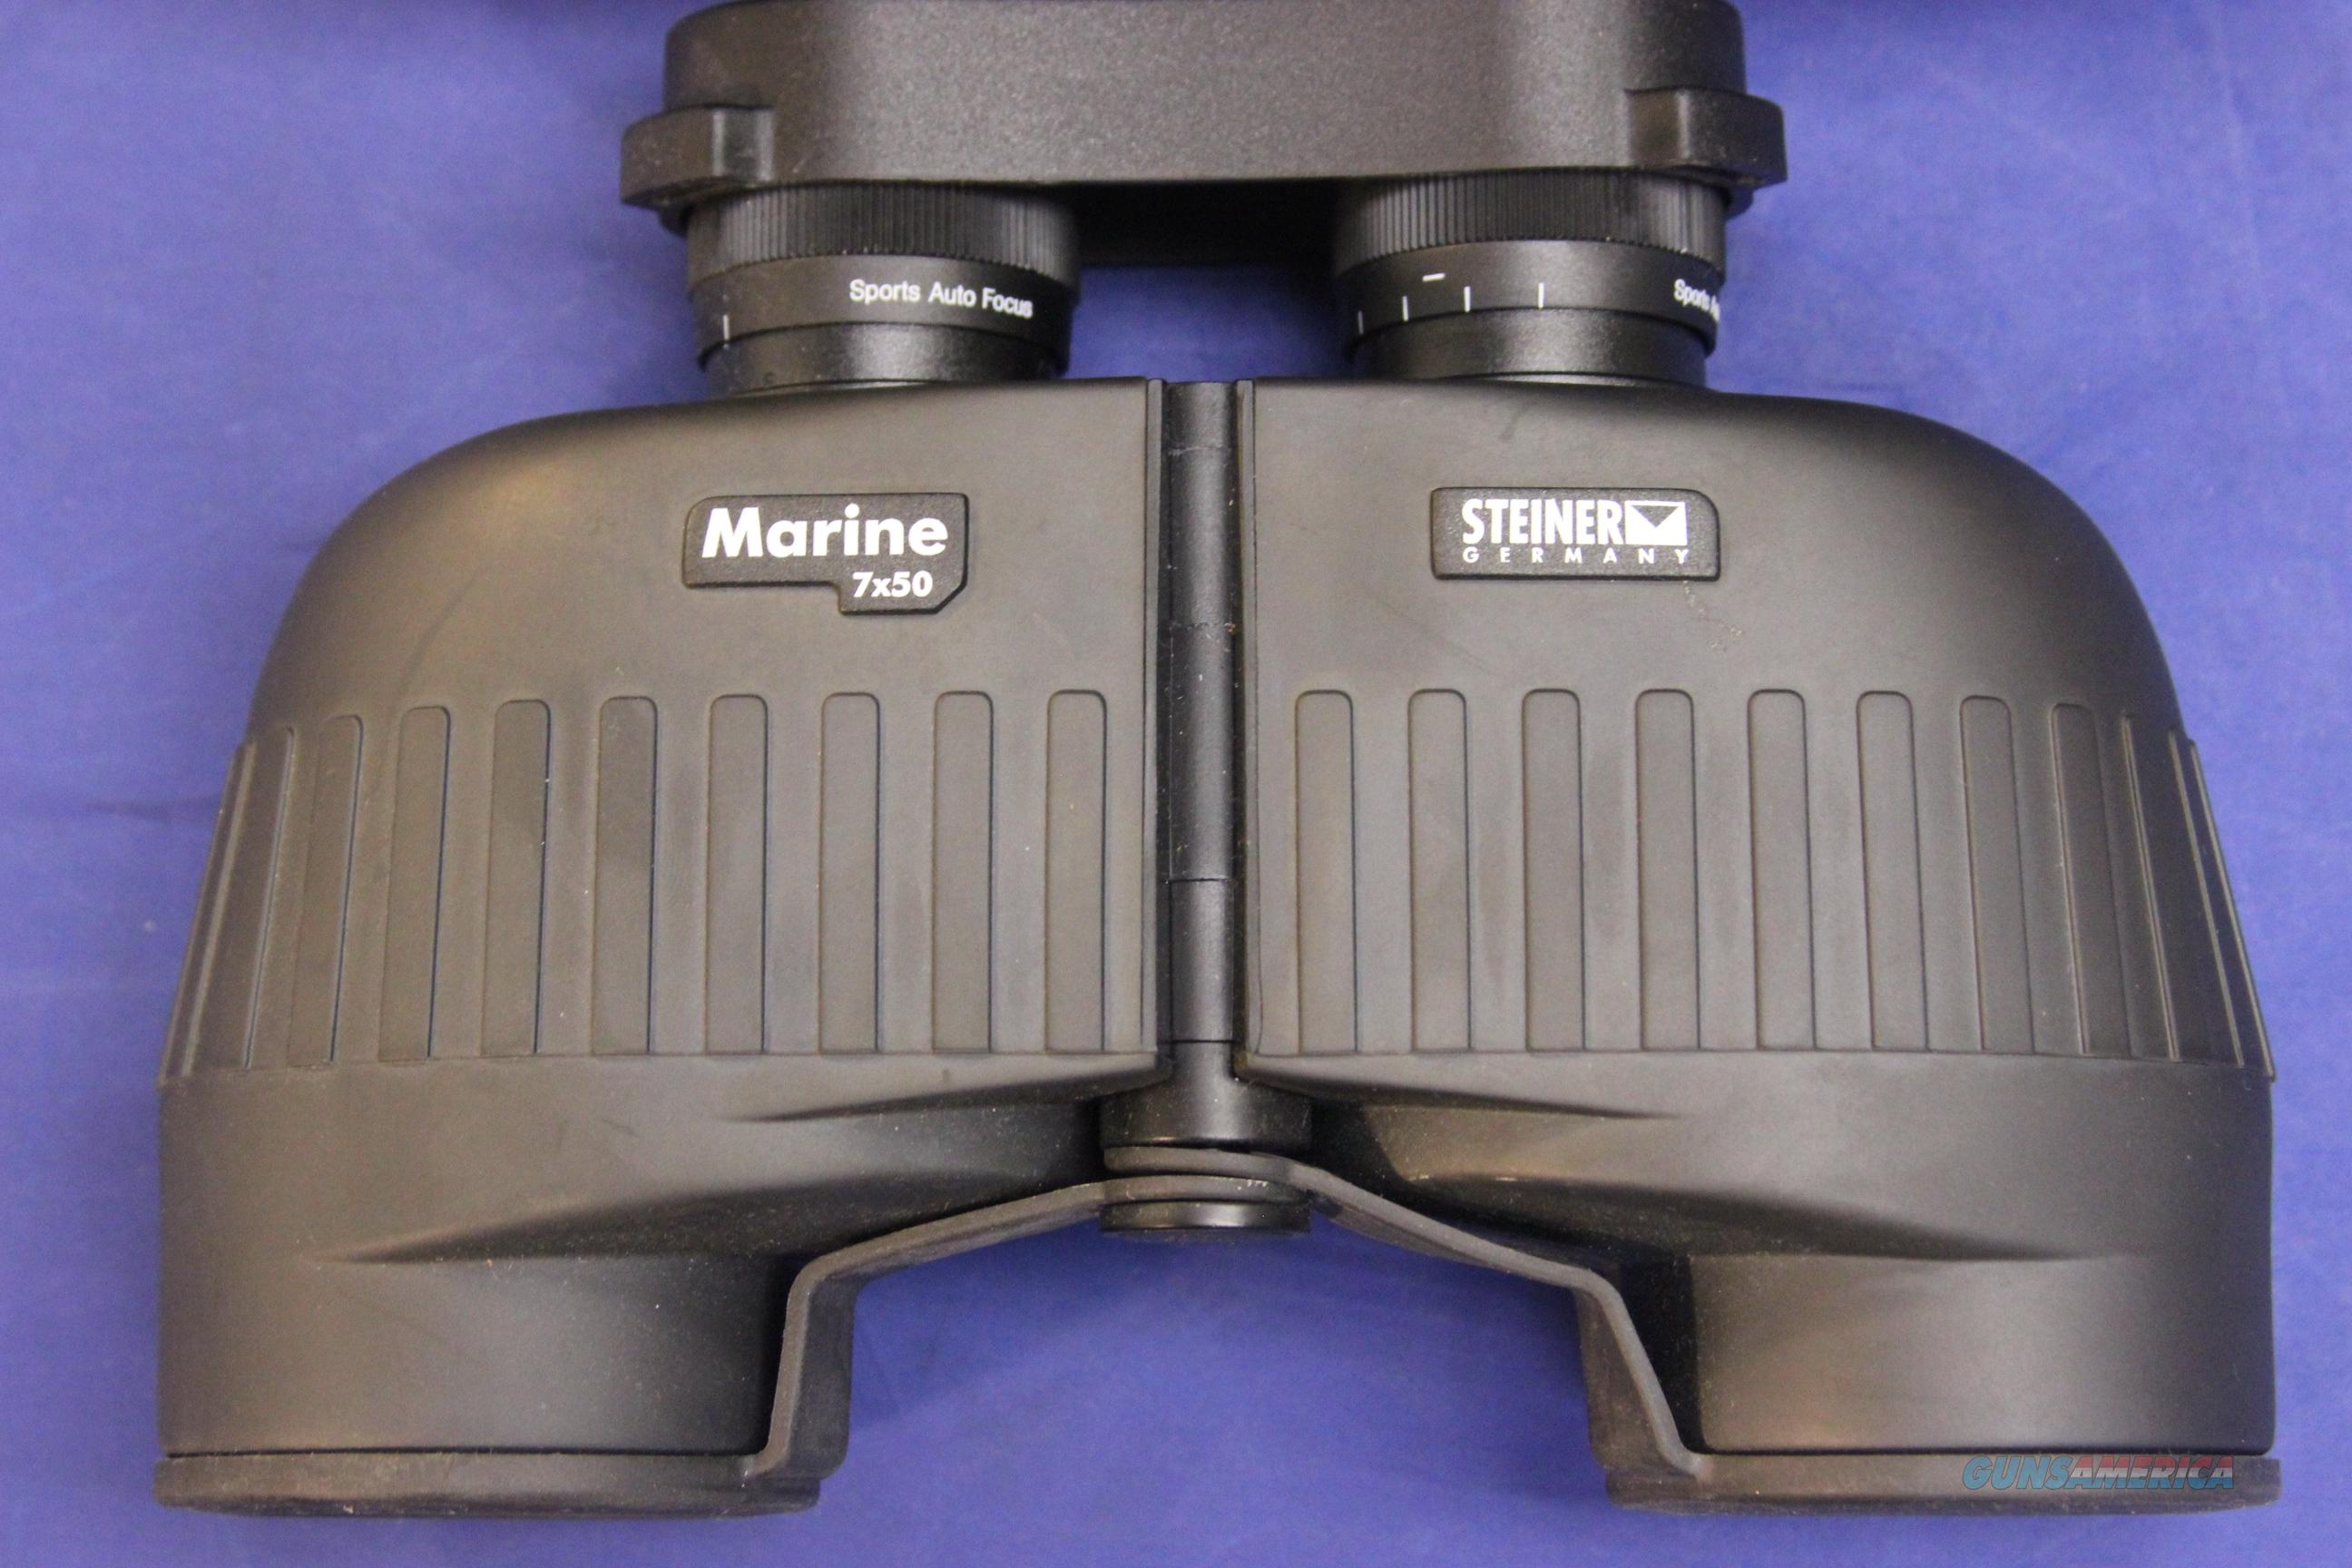 Steiner Marine 7x50 Binocular New For Sale At 920533567